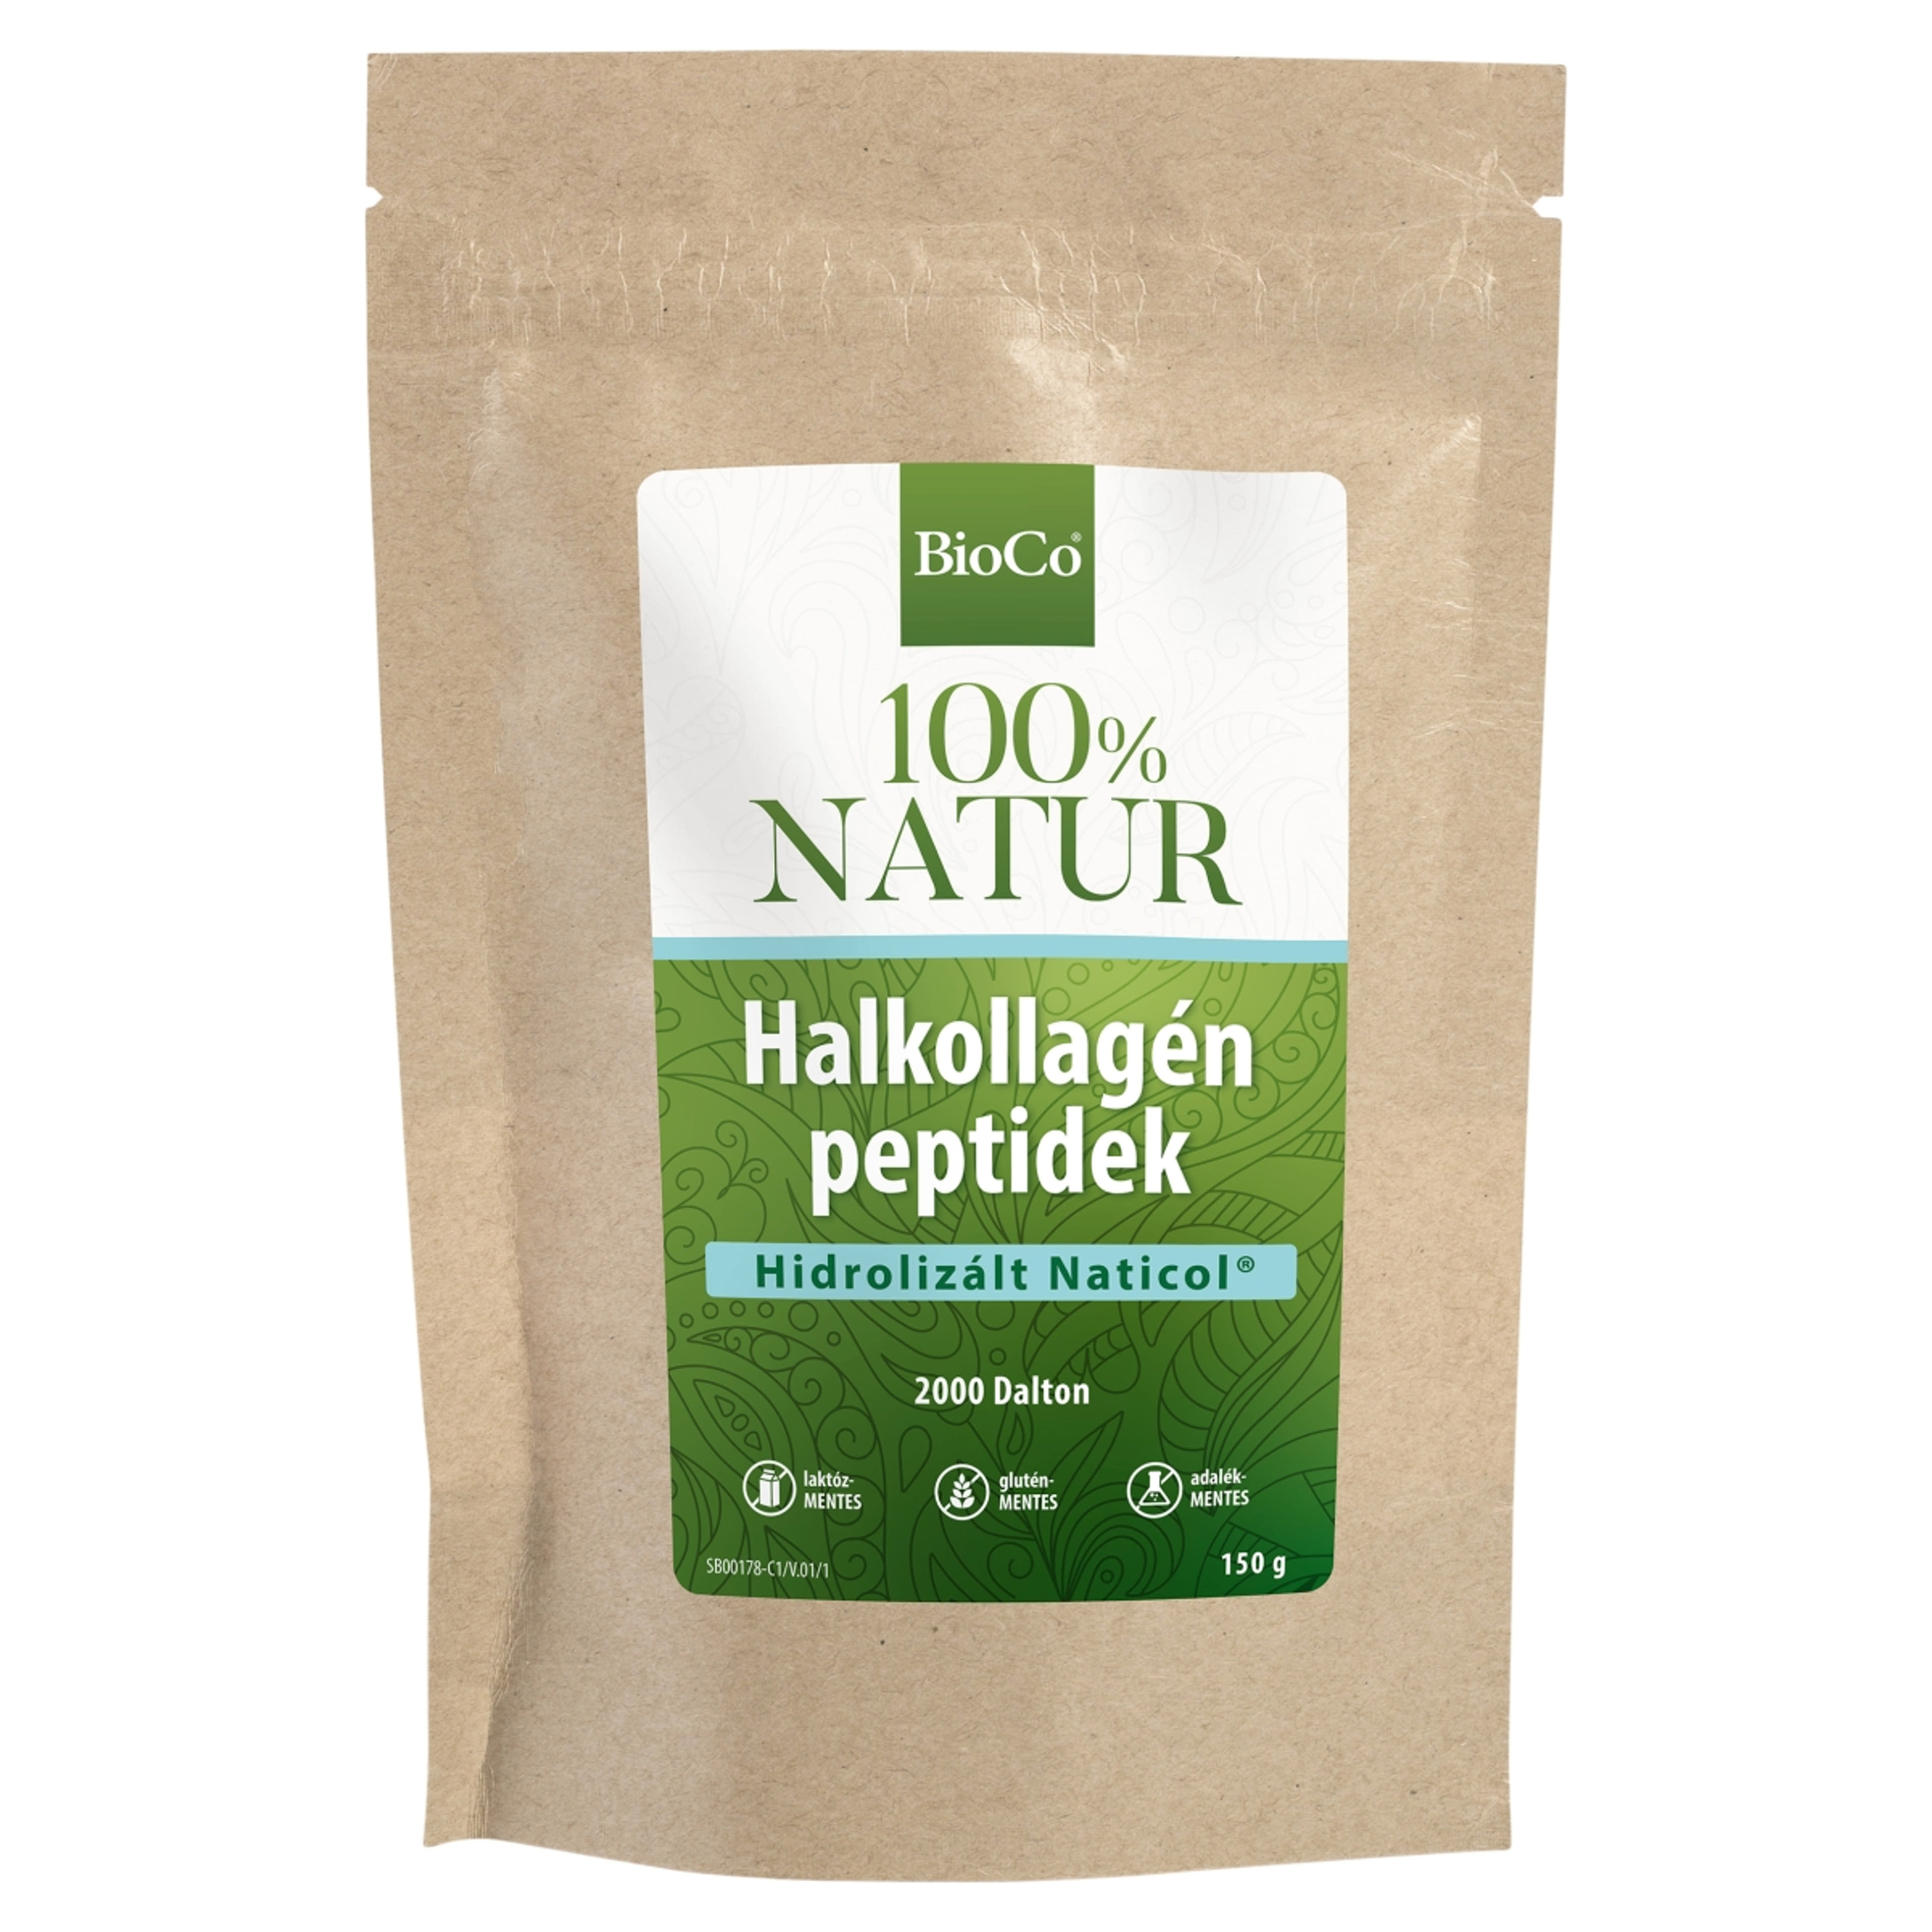 BioCo 100% Natur halkollagén peptideket tartalmazó étrend-kiegészítő por - 150 g